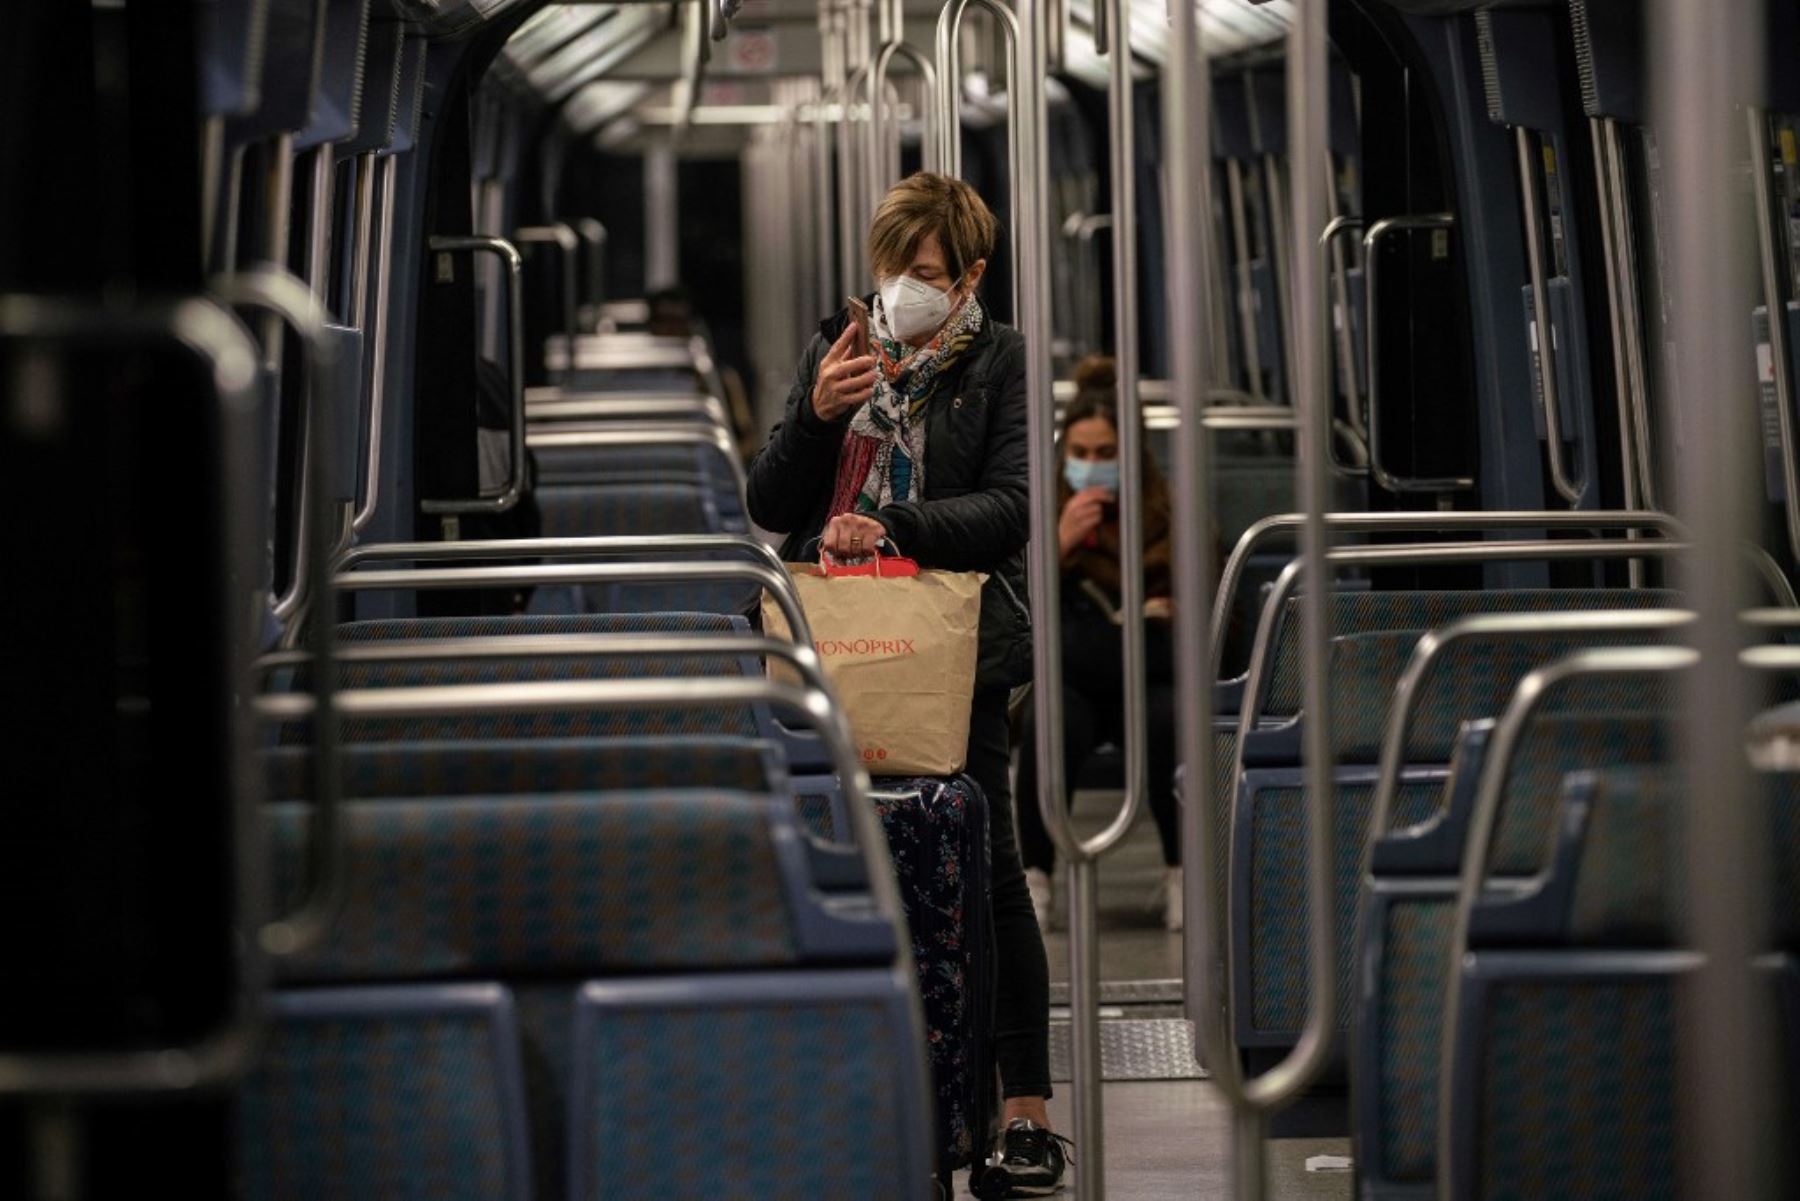 Las personas viajan en un tren de metro en París, al comienzo de un toque de queda nocturno implementado para combatir la propagación de la pandemia covid-19 causada por el nuevo coronavirus. Foto: AFP